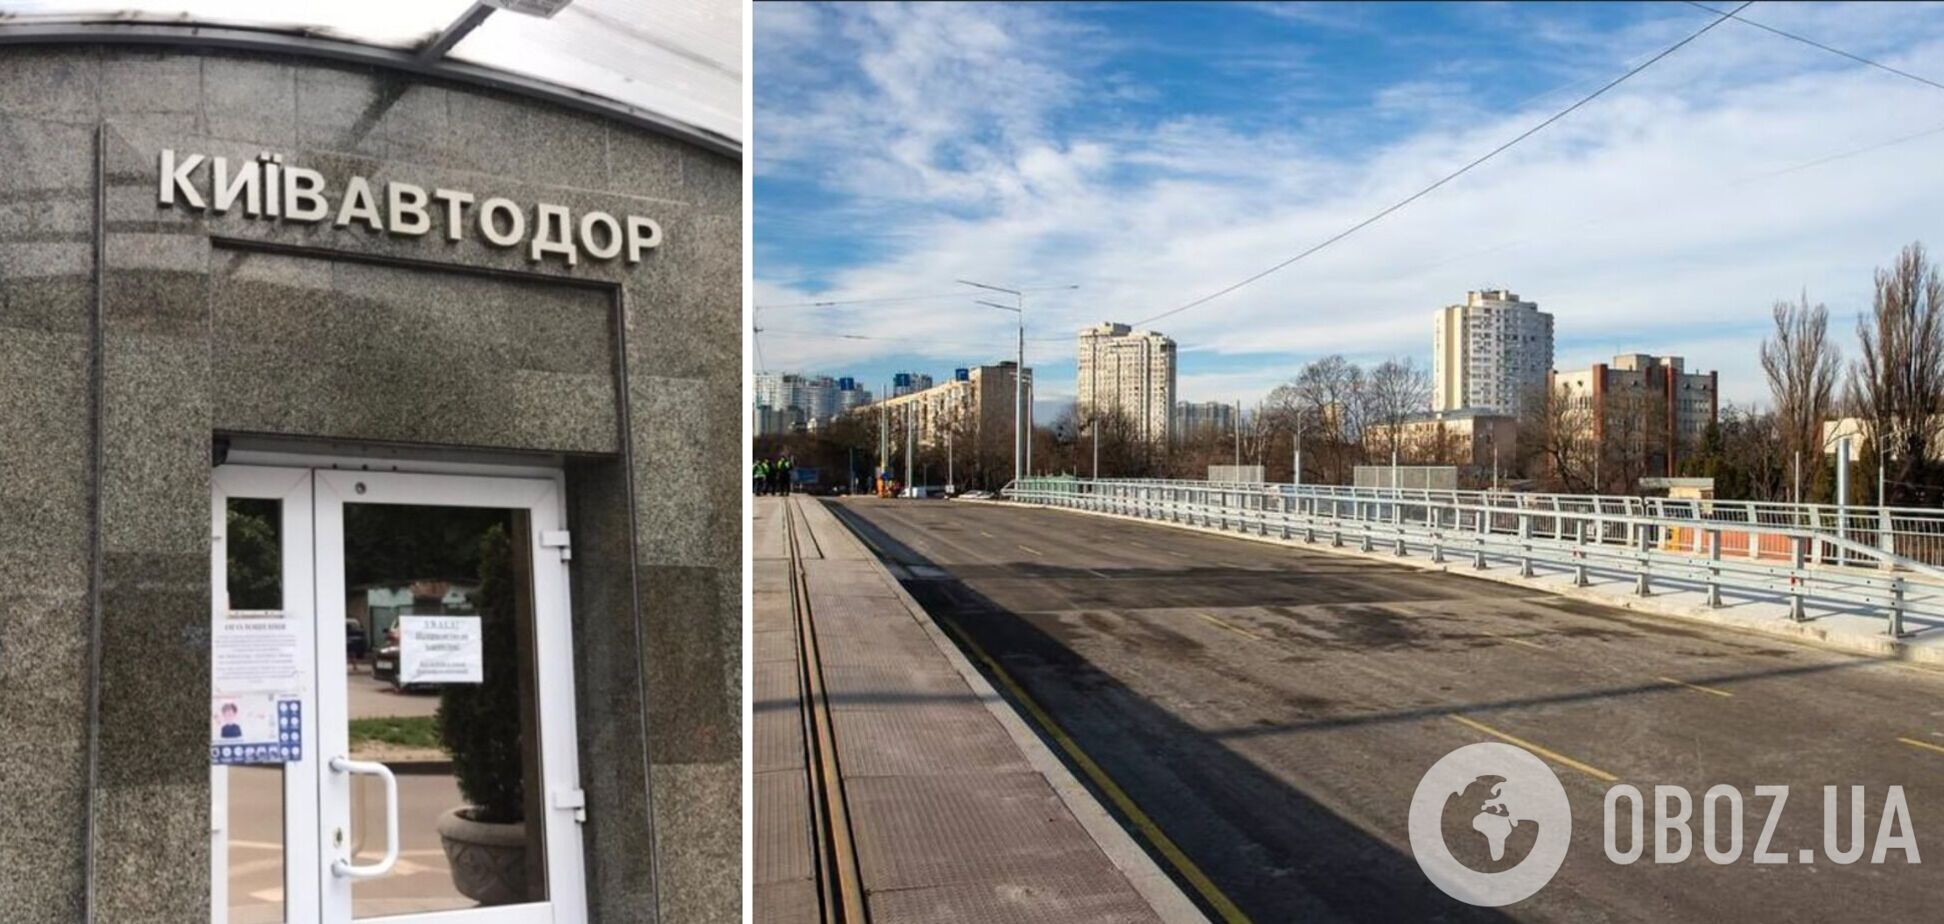 'Київавтодор' прокоментував інформацію ЗМІ про завищення цін на ремонт Дегтярівського мосту в столиці